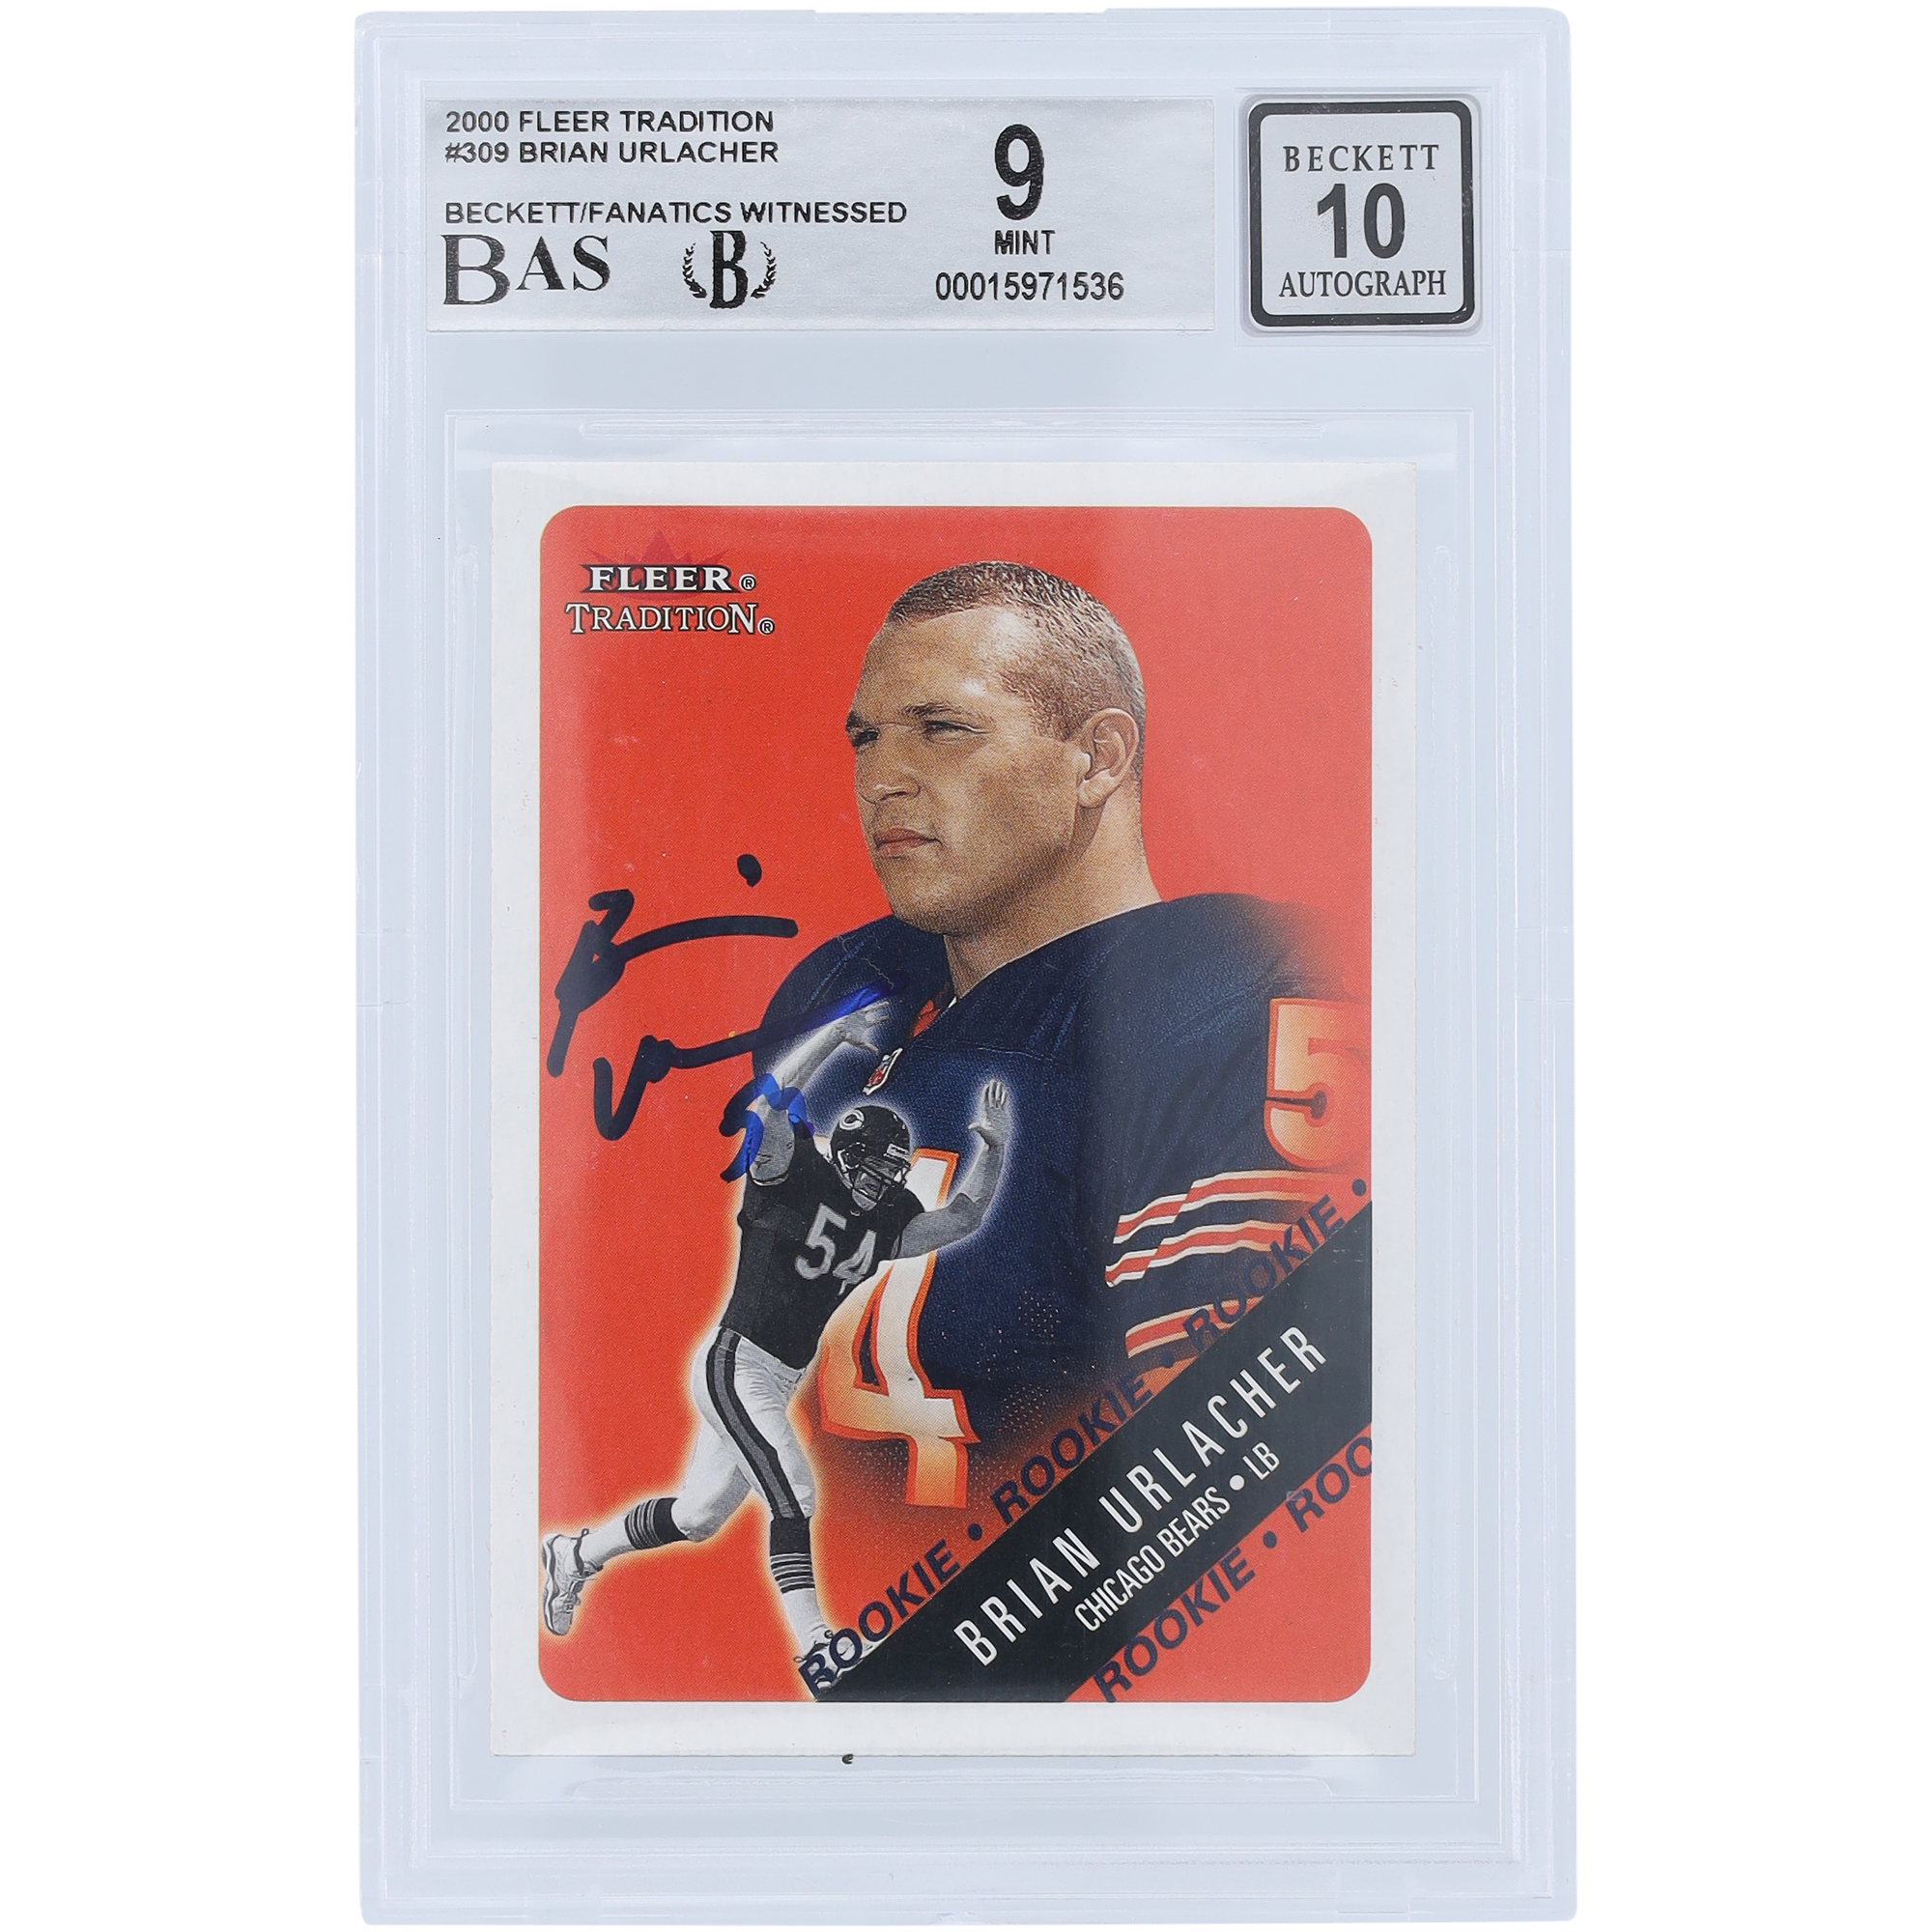 Brian Urlacher Chicago Bears signierte 2000 Fleer Tradition #309 Beckett Fanatics bezeugte authentifizierte 9/10 Rookie-Karte